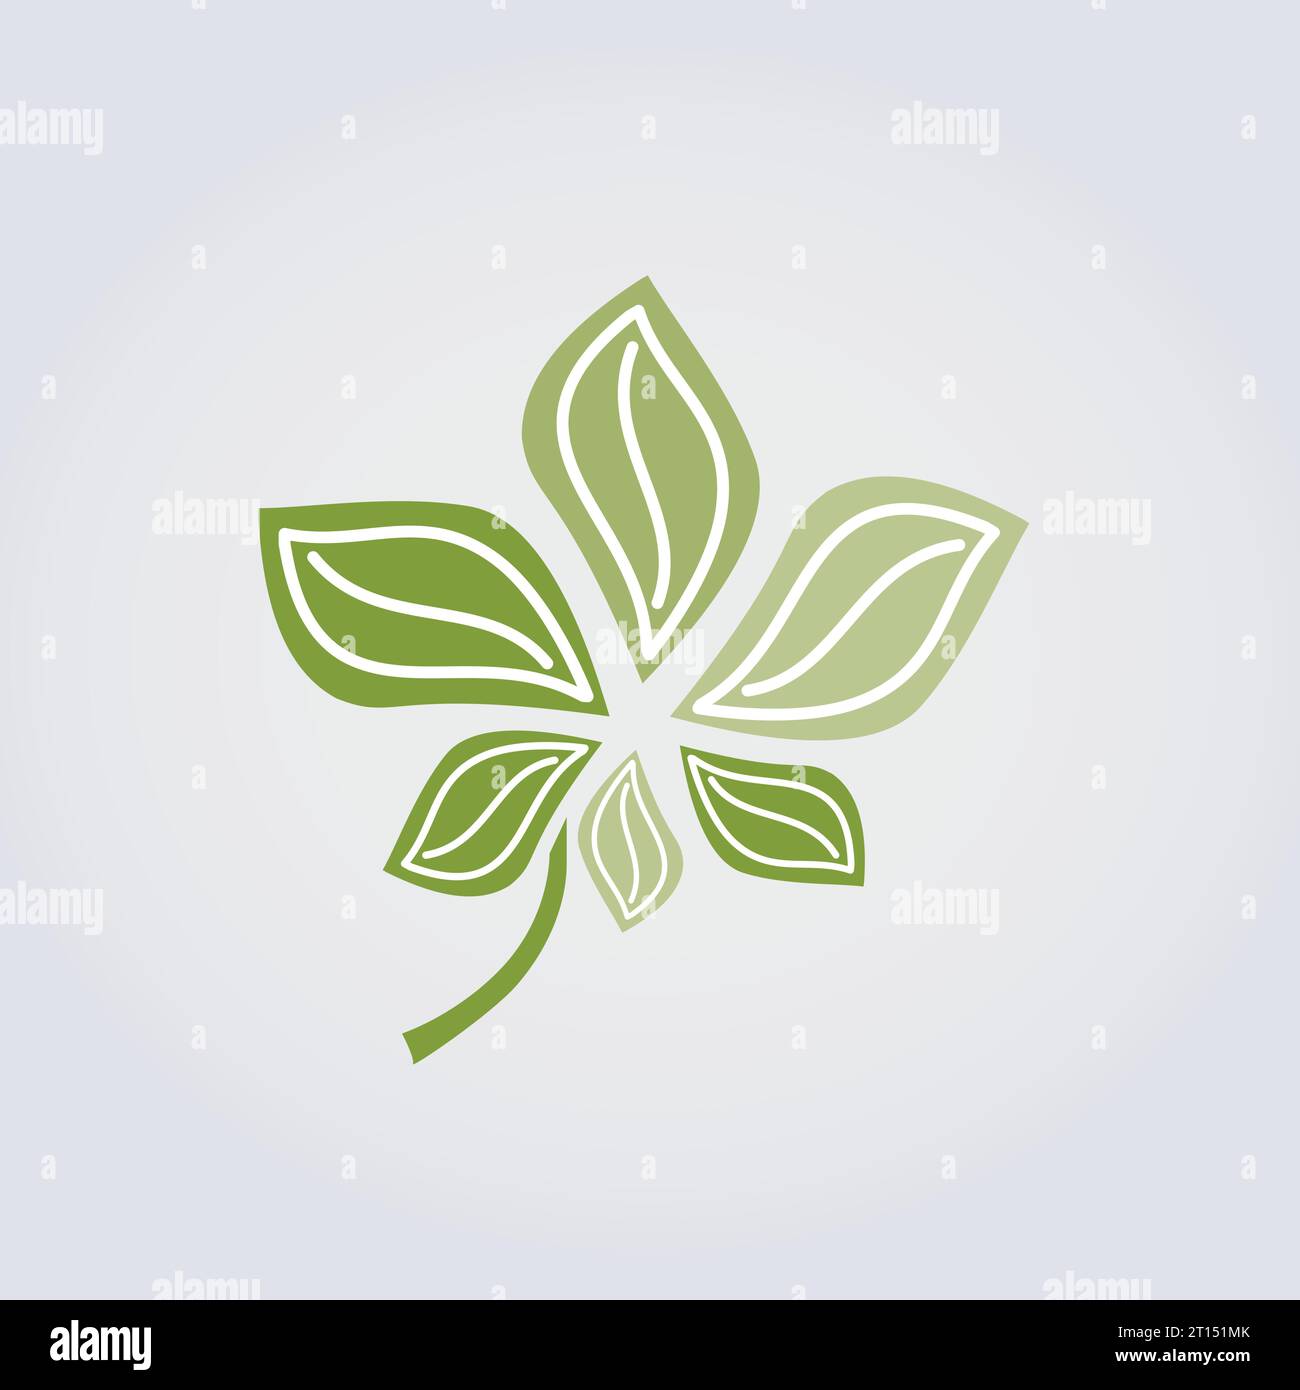 Icône nature, Paysage, feuillage, feuilles et gouttes d'eau Design Bleu couleurs vertes pour la conception de logo Green Business Jardinage Illustration de Vecteur